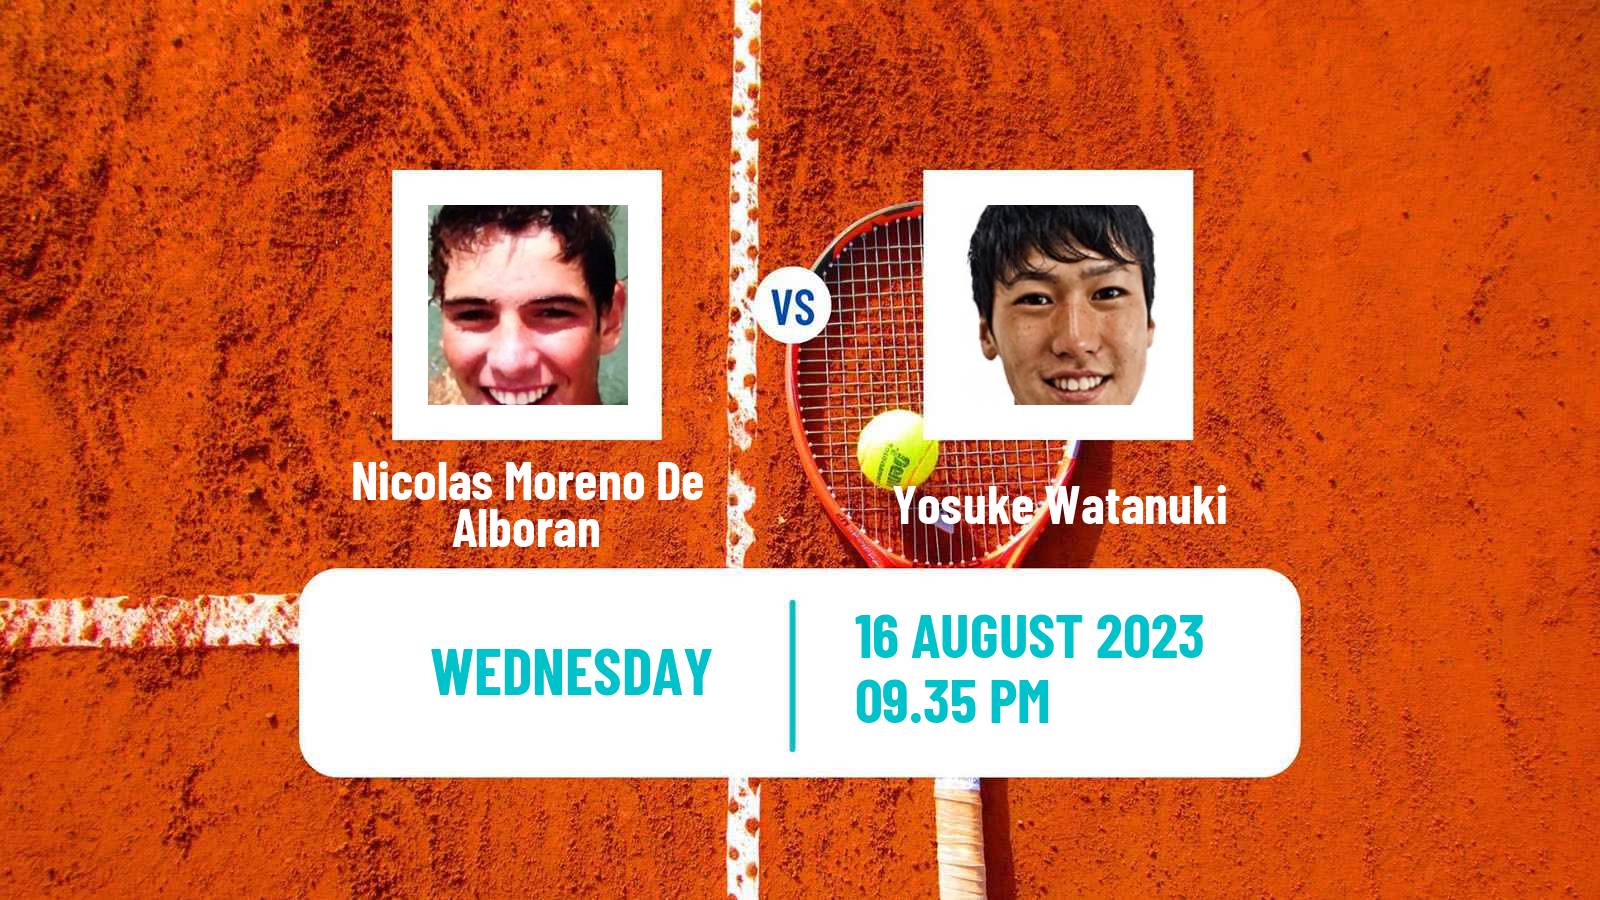 Tennis Stanford Challenger Men Nicolas Moreno De Alboran - Yosuke Watanuki